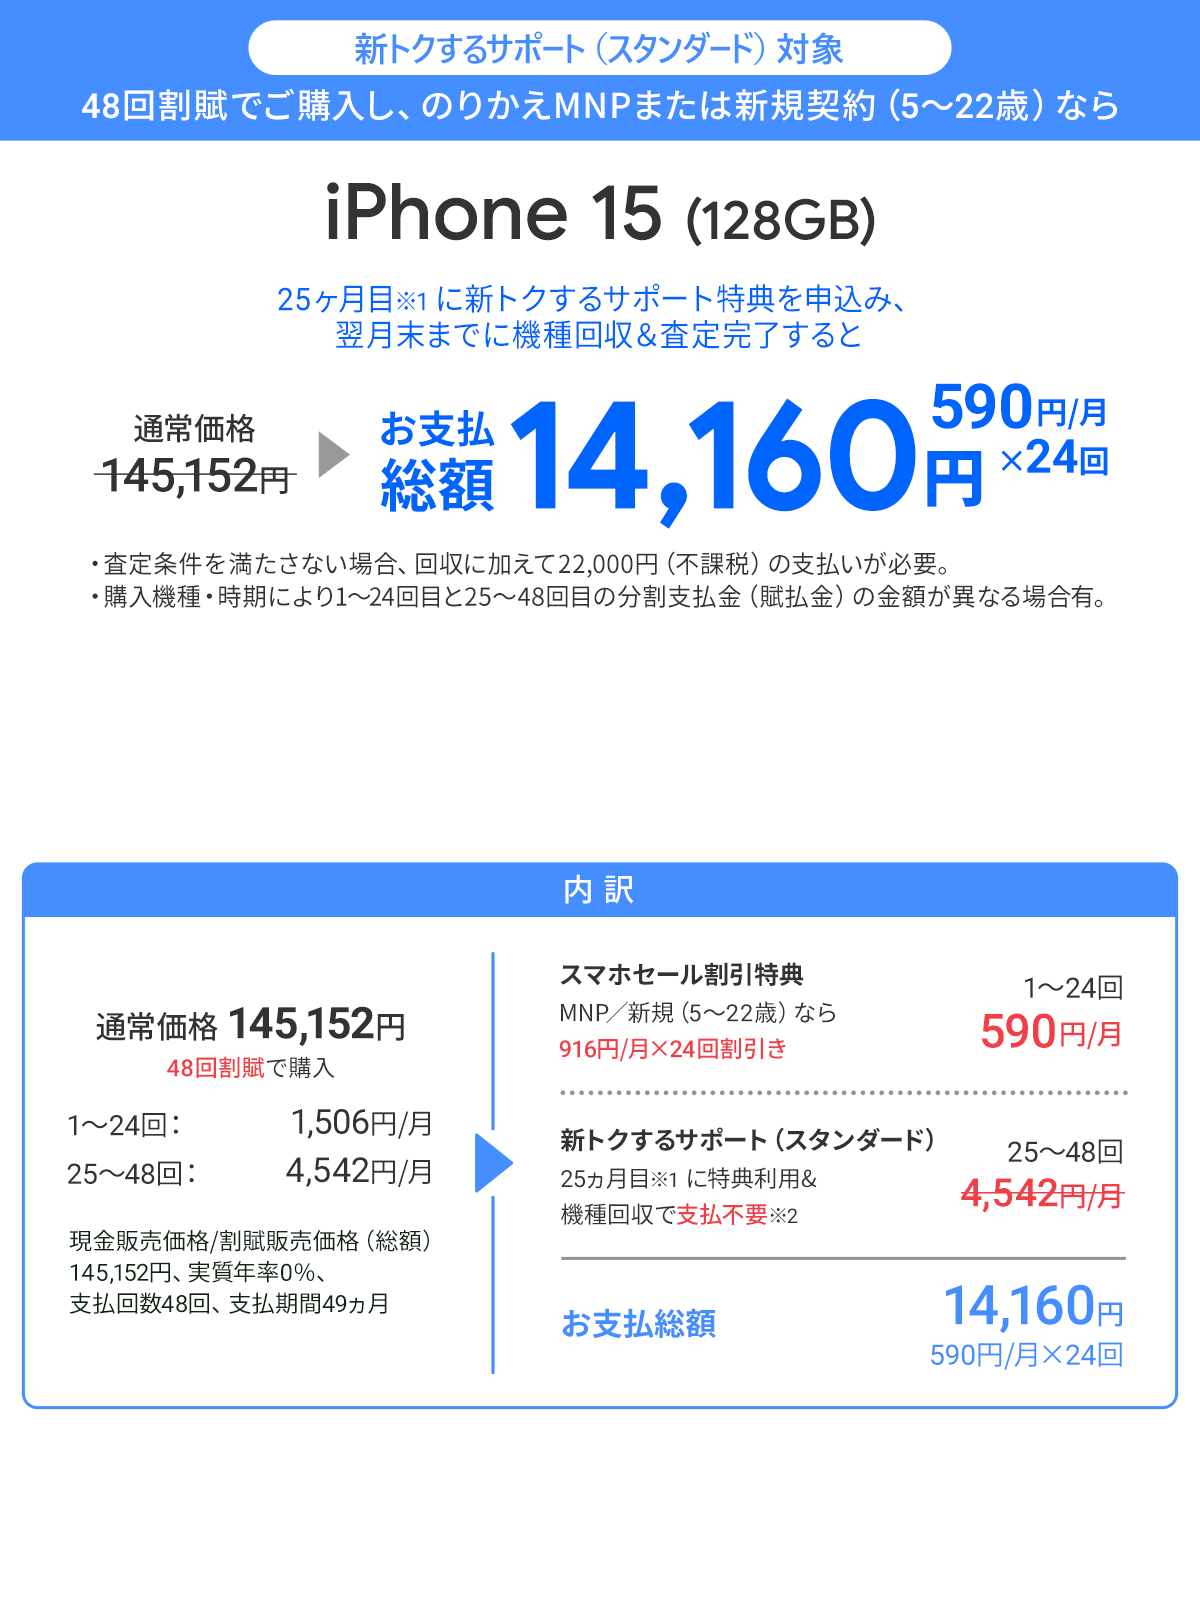 ソフトバンク「iPhone 15 128GB」が割引き！スマホセール